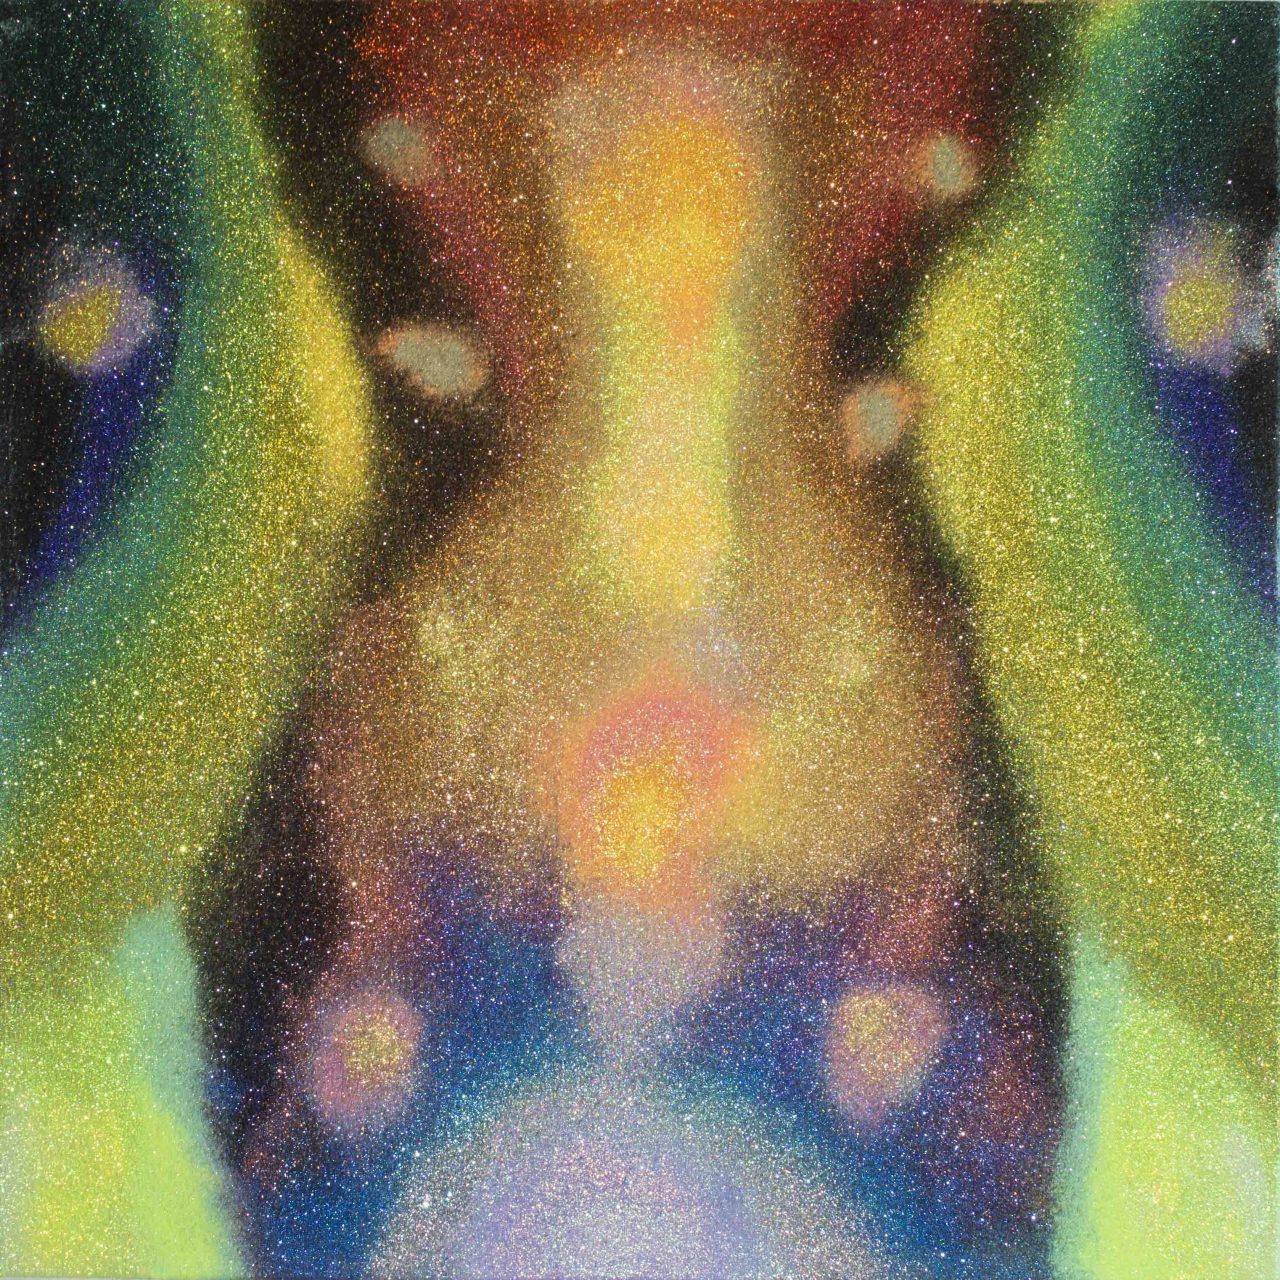 Transmutation 4, 2017, 110cm x 110cm, glitter on burlap